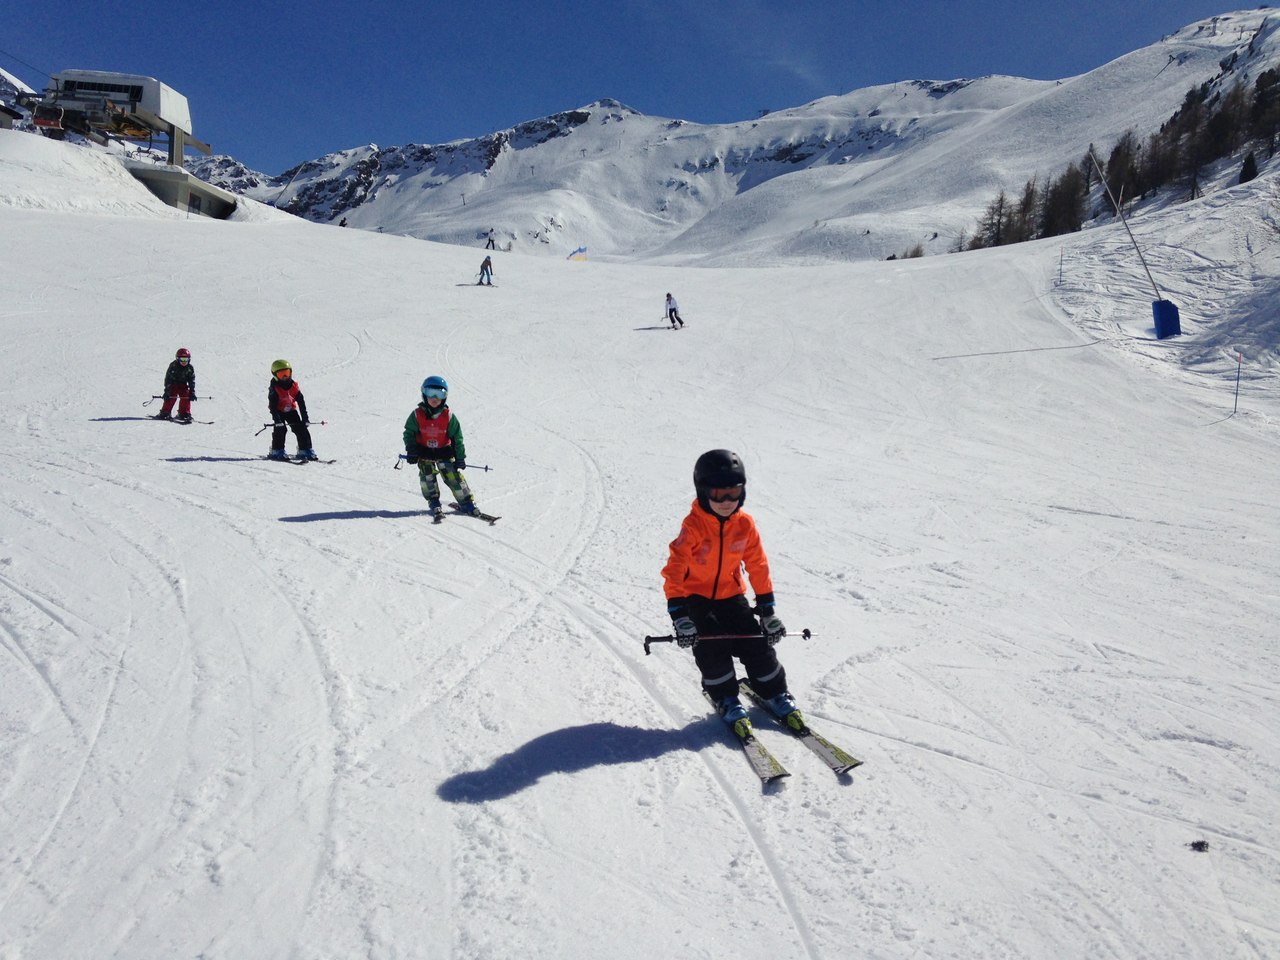 спортивные сборы по горным лыжам в аосте, курмайоре, червиния